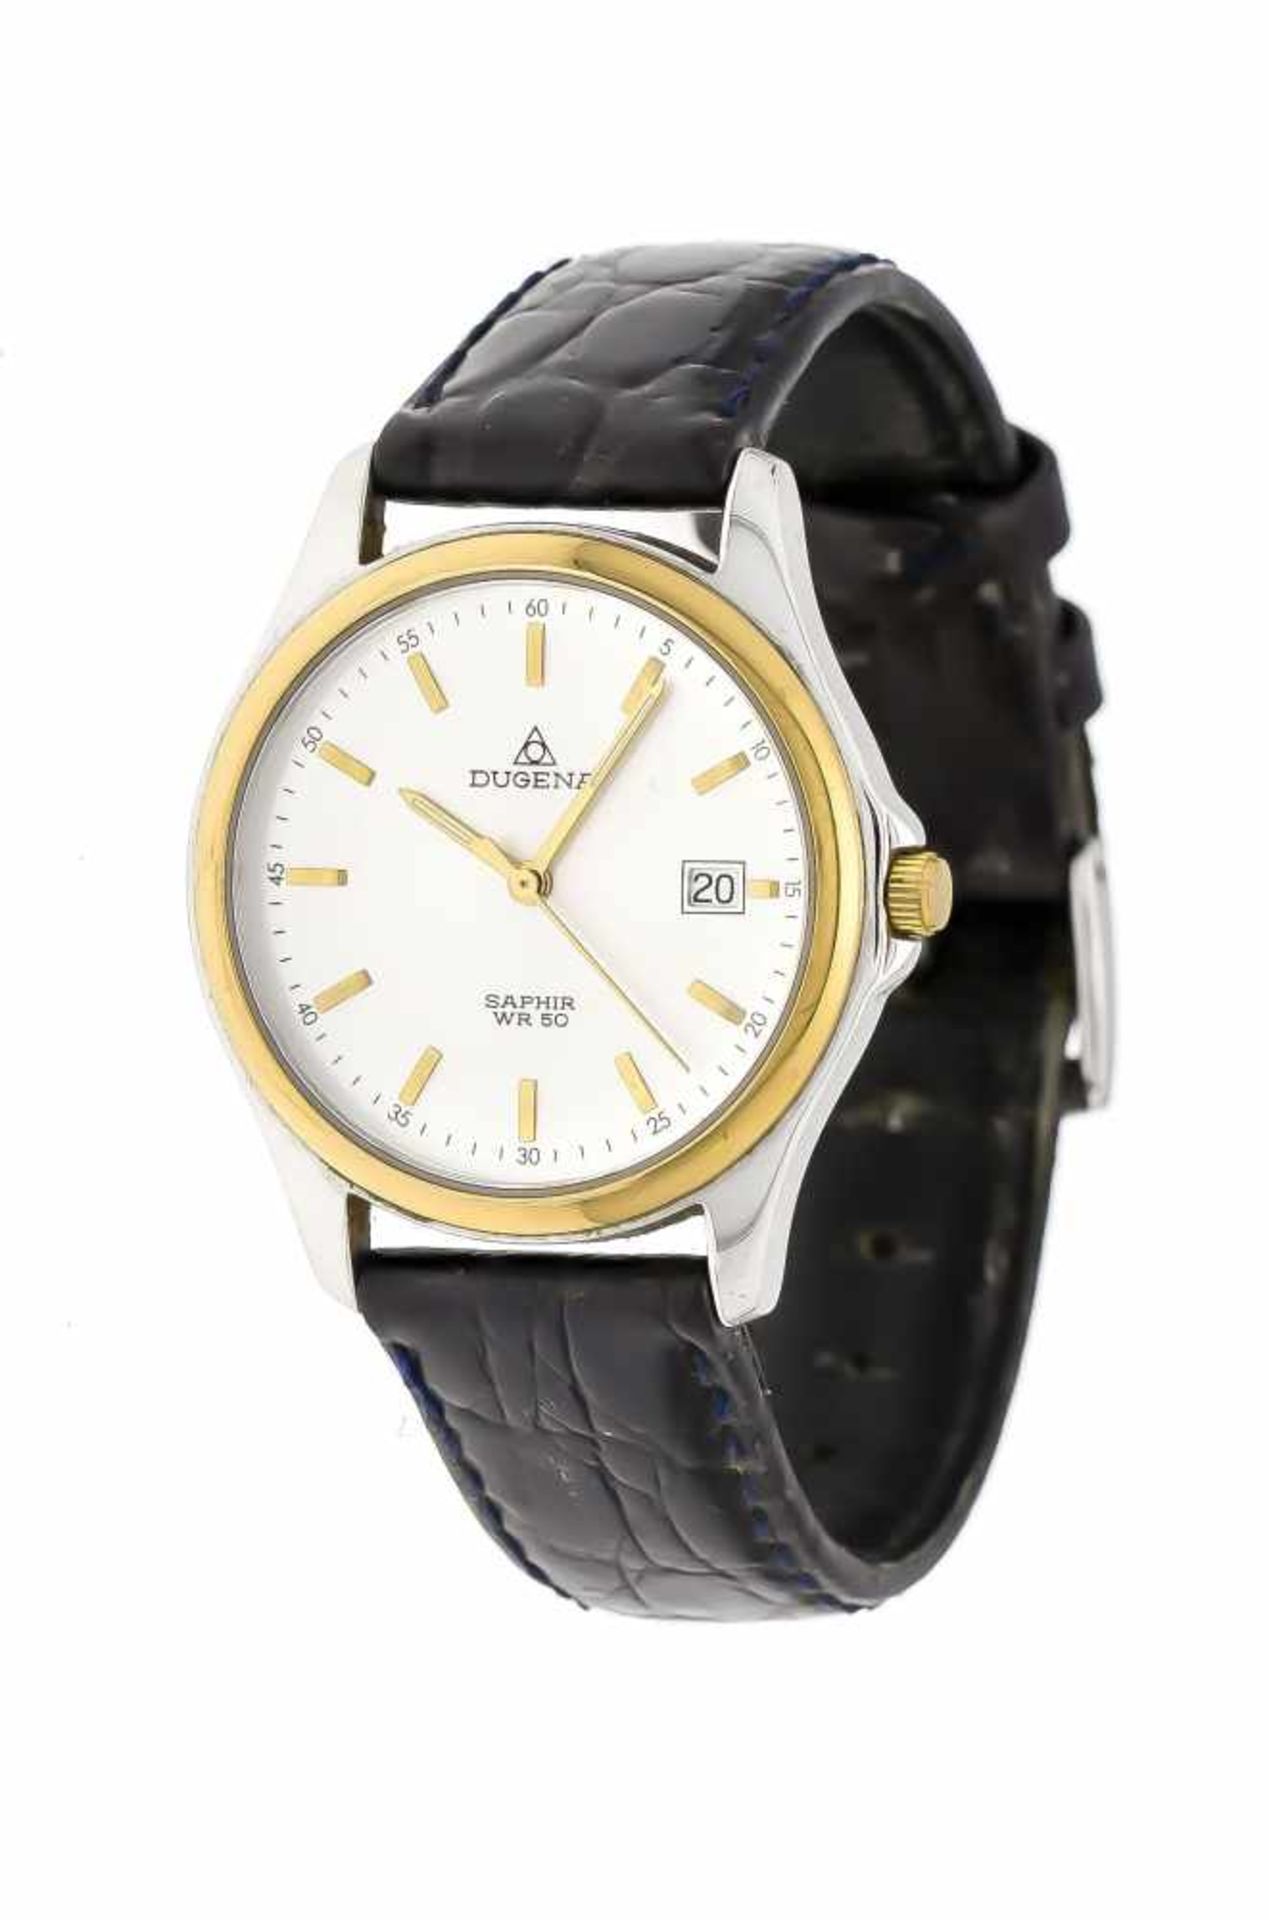 Dugena Herrenquarzuhr bicolor, mit schwarzem Lederband, Uhr läuft, wd 50m, silberf.Zifferblatt mit